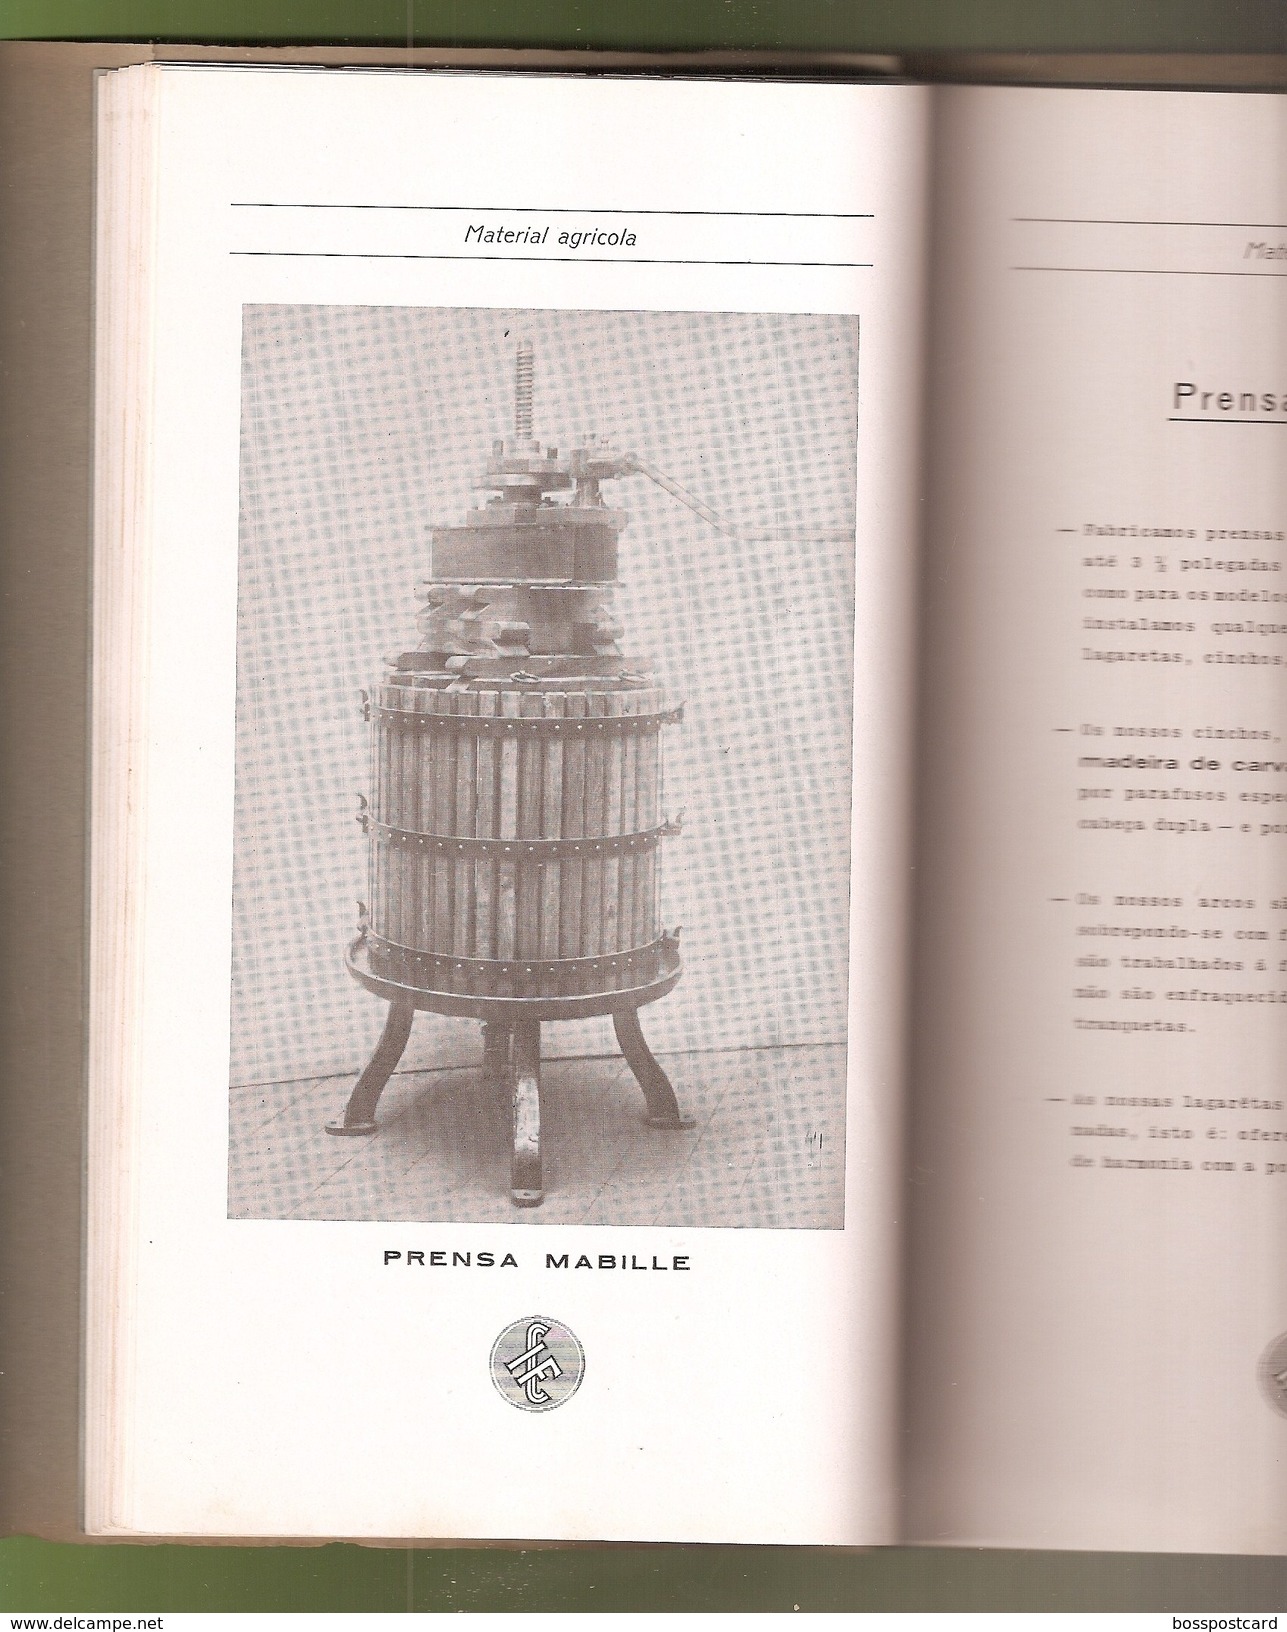 Porto - Catalogo da Companhia Industrial de Fundição de 1931 - Publicidade - Portugal